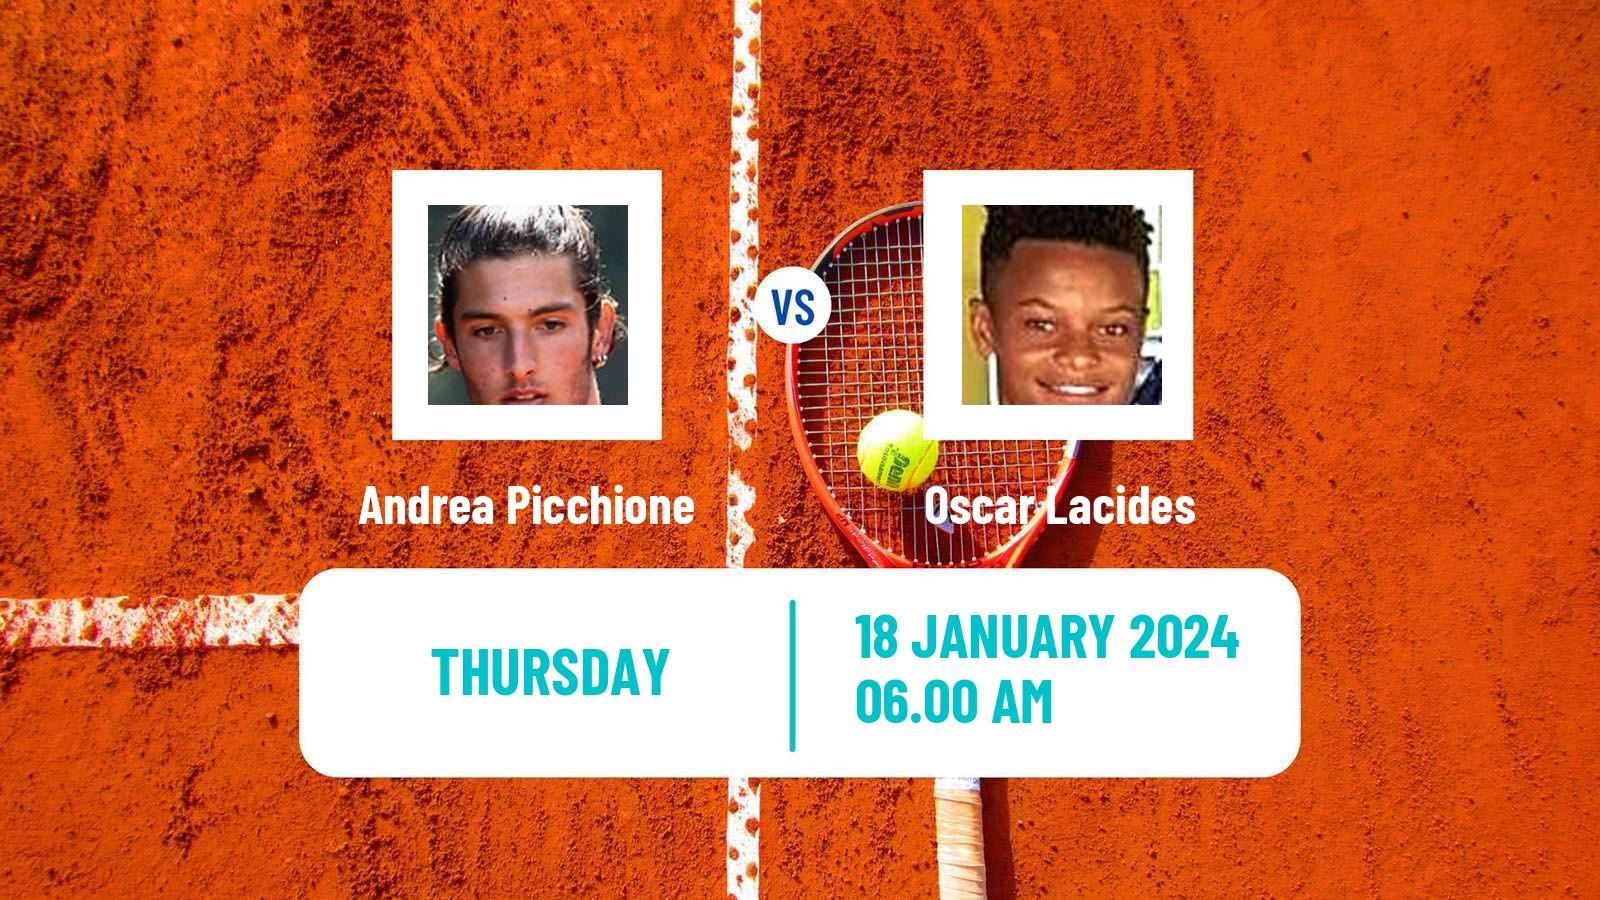 Tennis ITF M15 Bressuire Men Andrea Picchione - Oscar Lacides